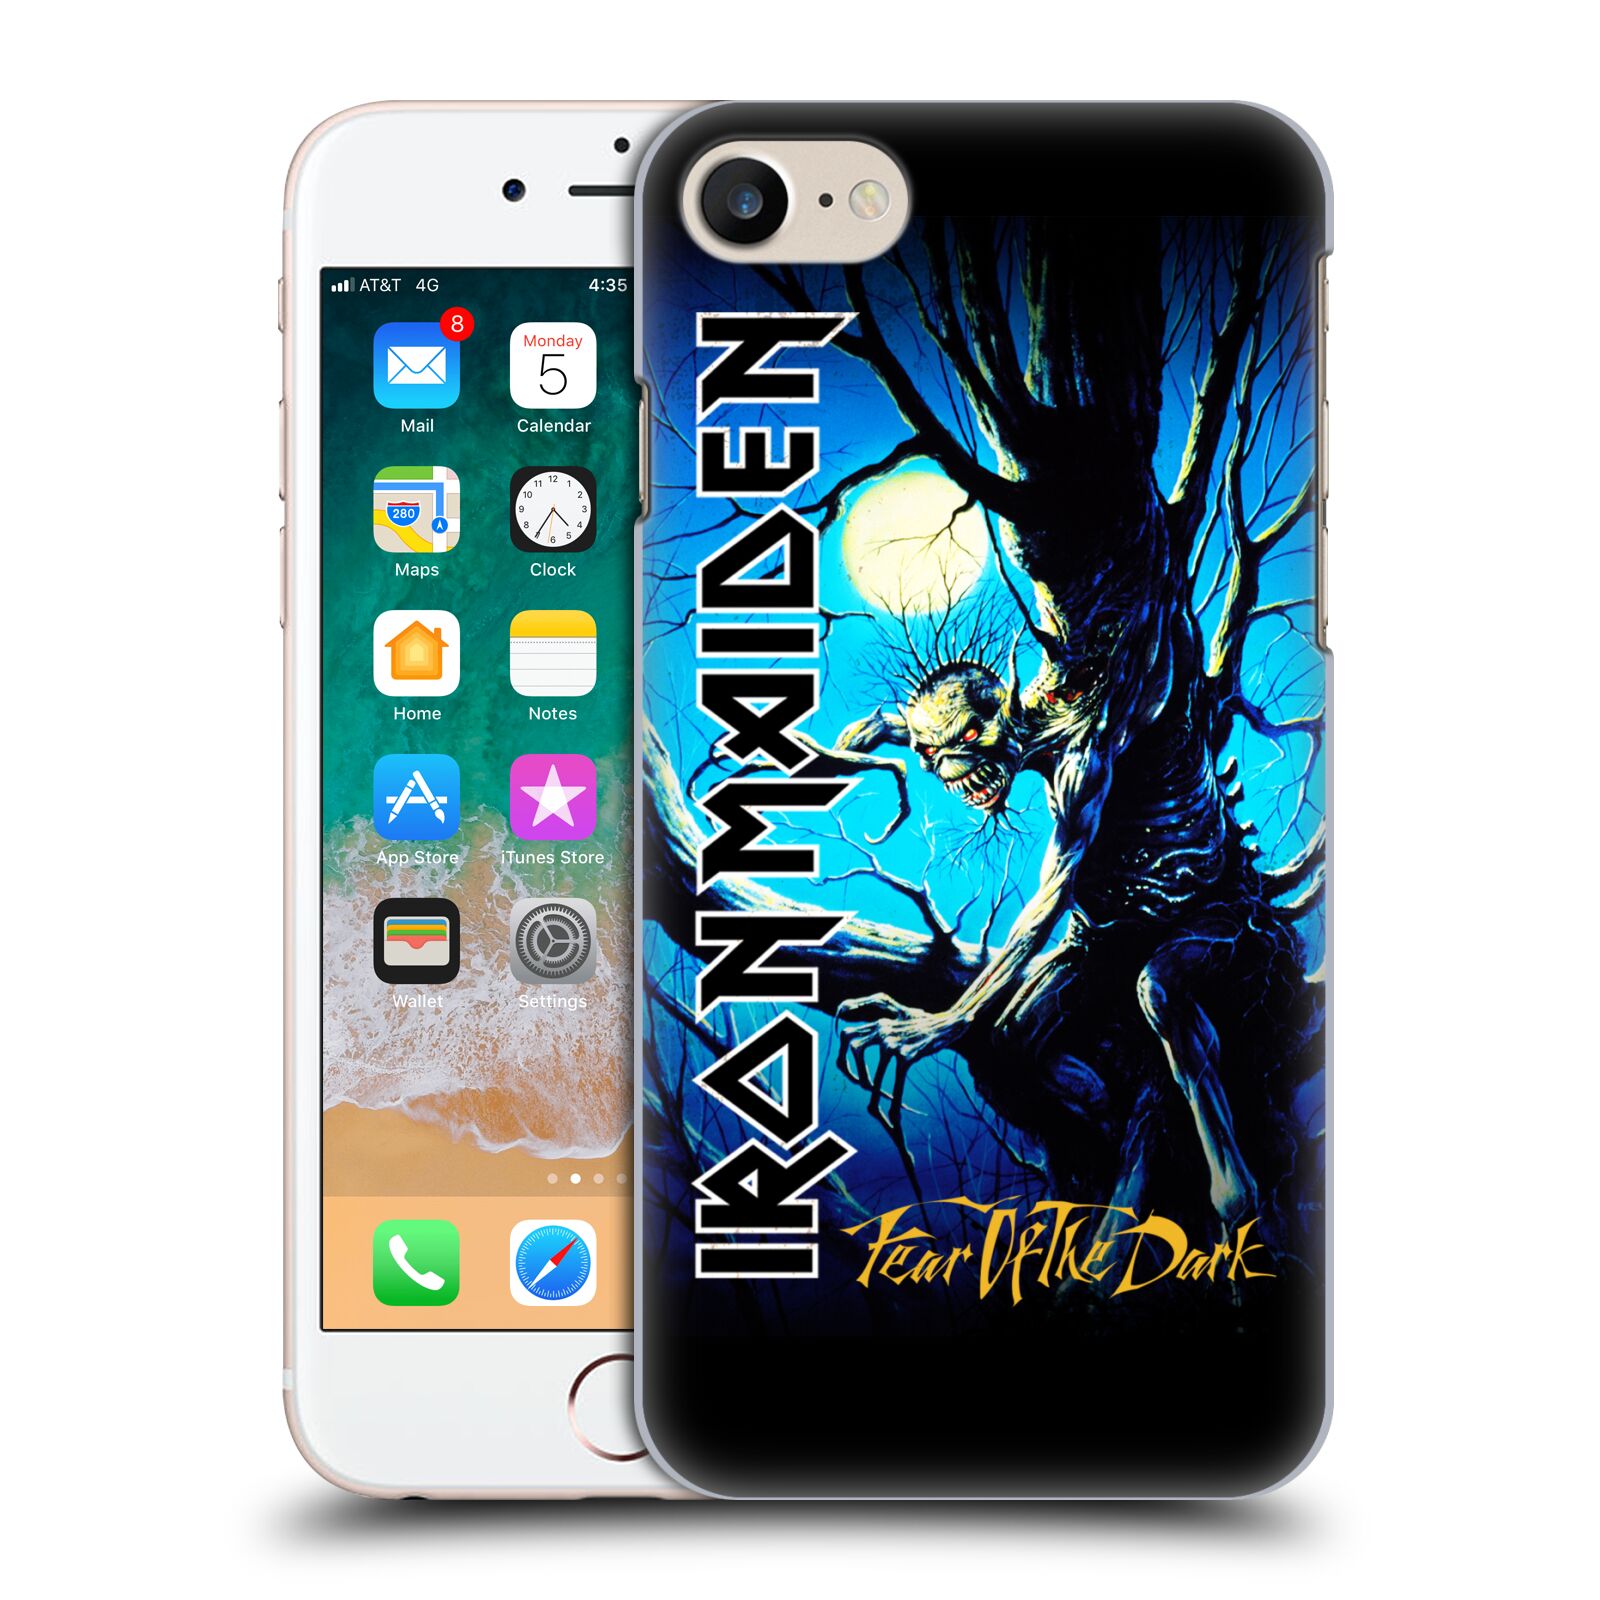 Plastové pouzdro na mobil Apple iPhone SE 2022 / SE 2020 - Head Case - Iron Maiden - Fear Of The Dark (Plastový kryt, pouzdro, obal na mobilní telefon Apple iPhone SE 2020 / Apple iPhone SE 2022 s motivem Iron Maiden - Fear Of The Dark)